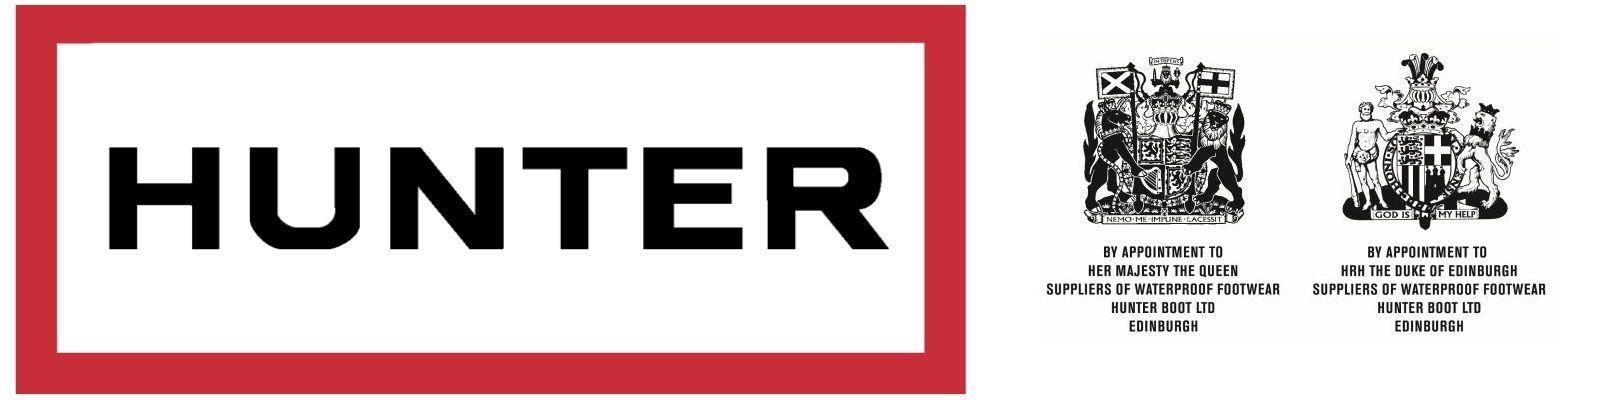 Hunter Boots Logo - Hunter x hunter Logos